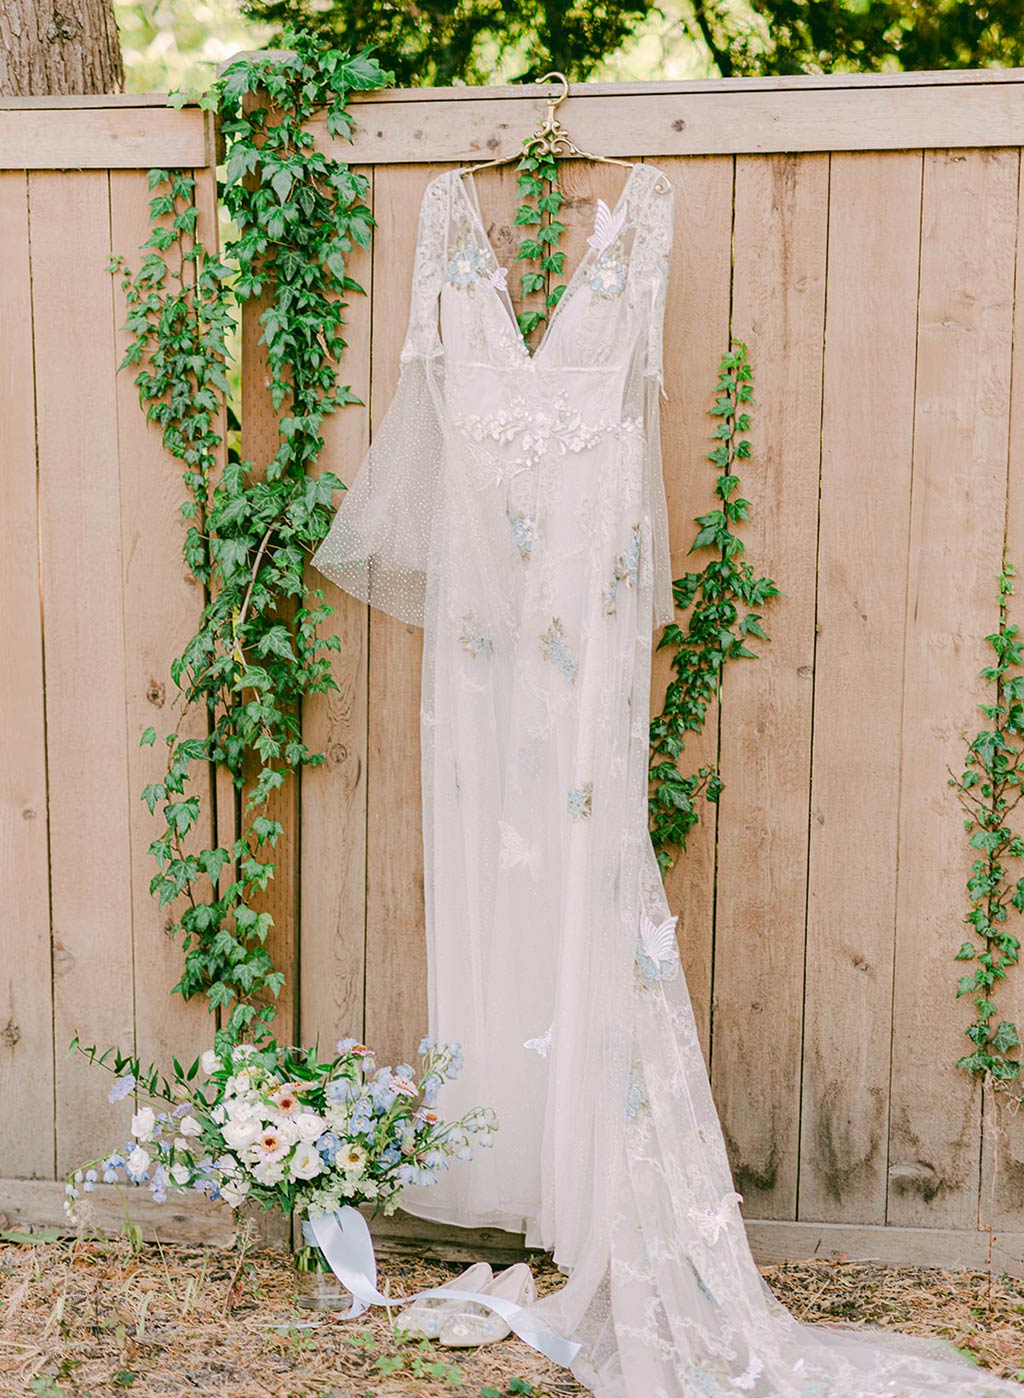 Chrysalis Wedding Dress on Hanger in Garden Setting